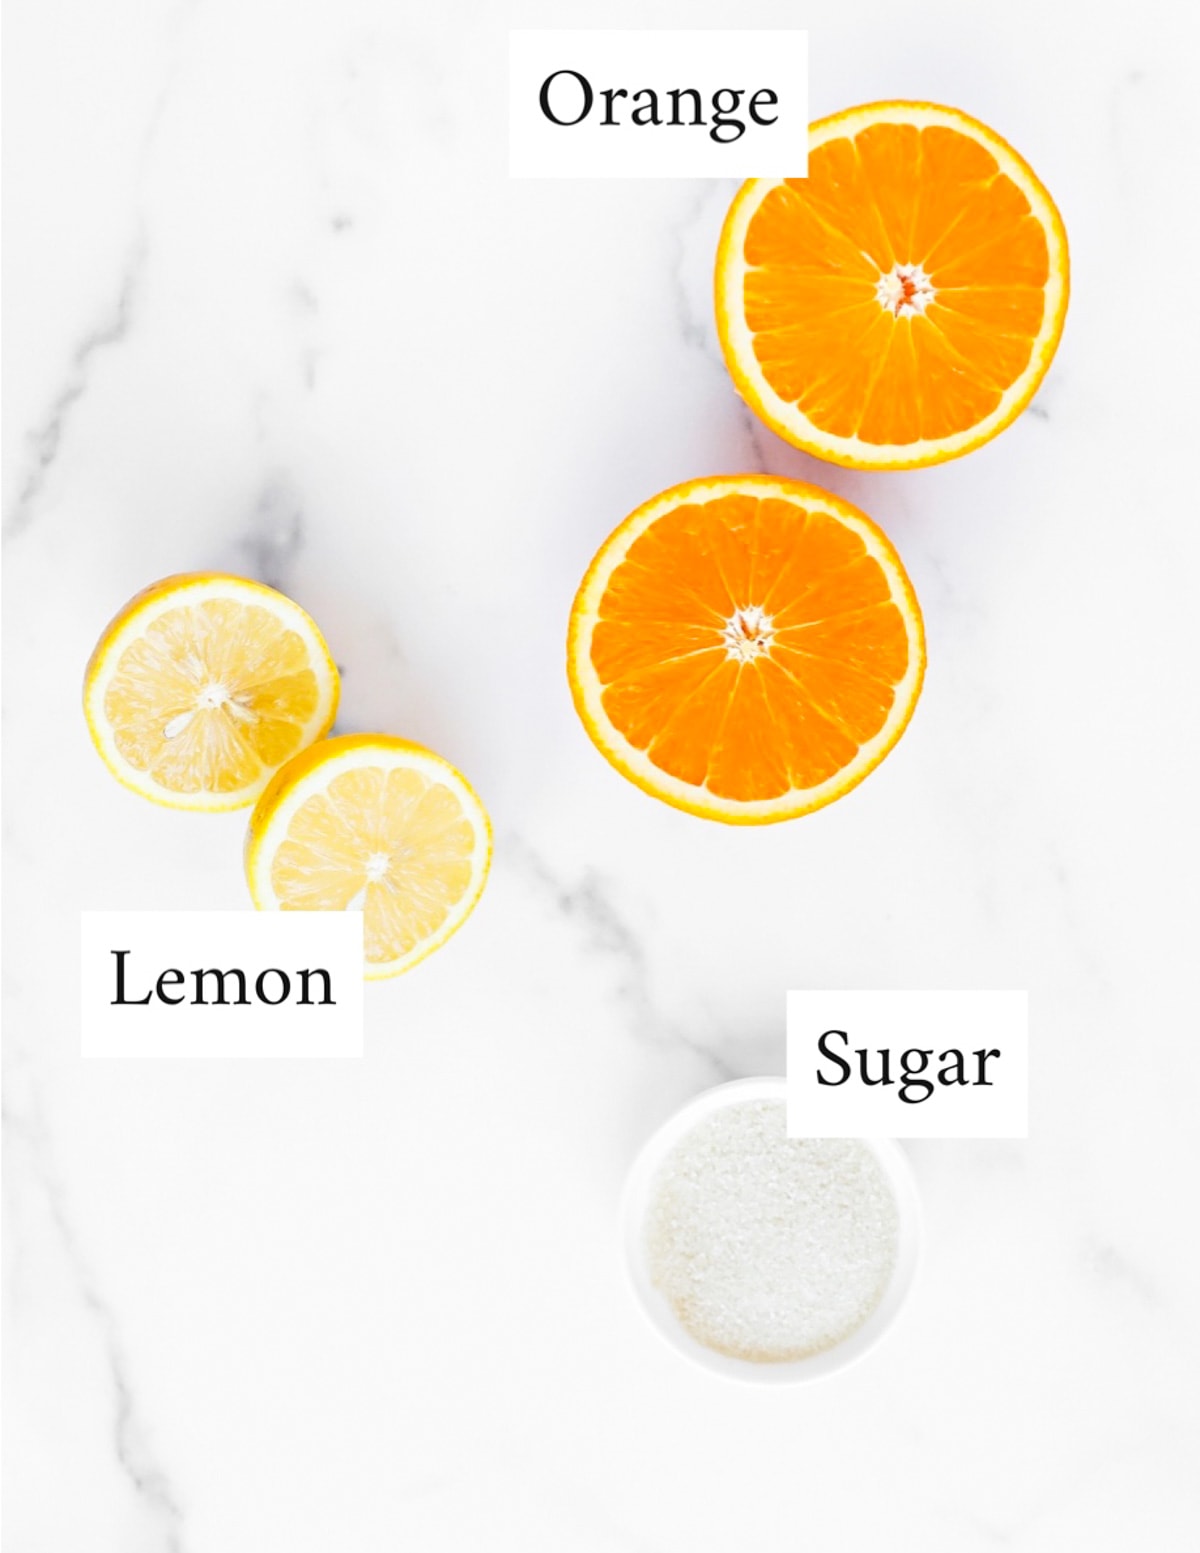 Labeled ingredients including: orange, lemon, sugar